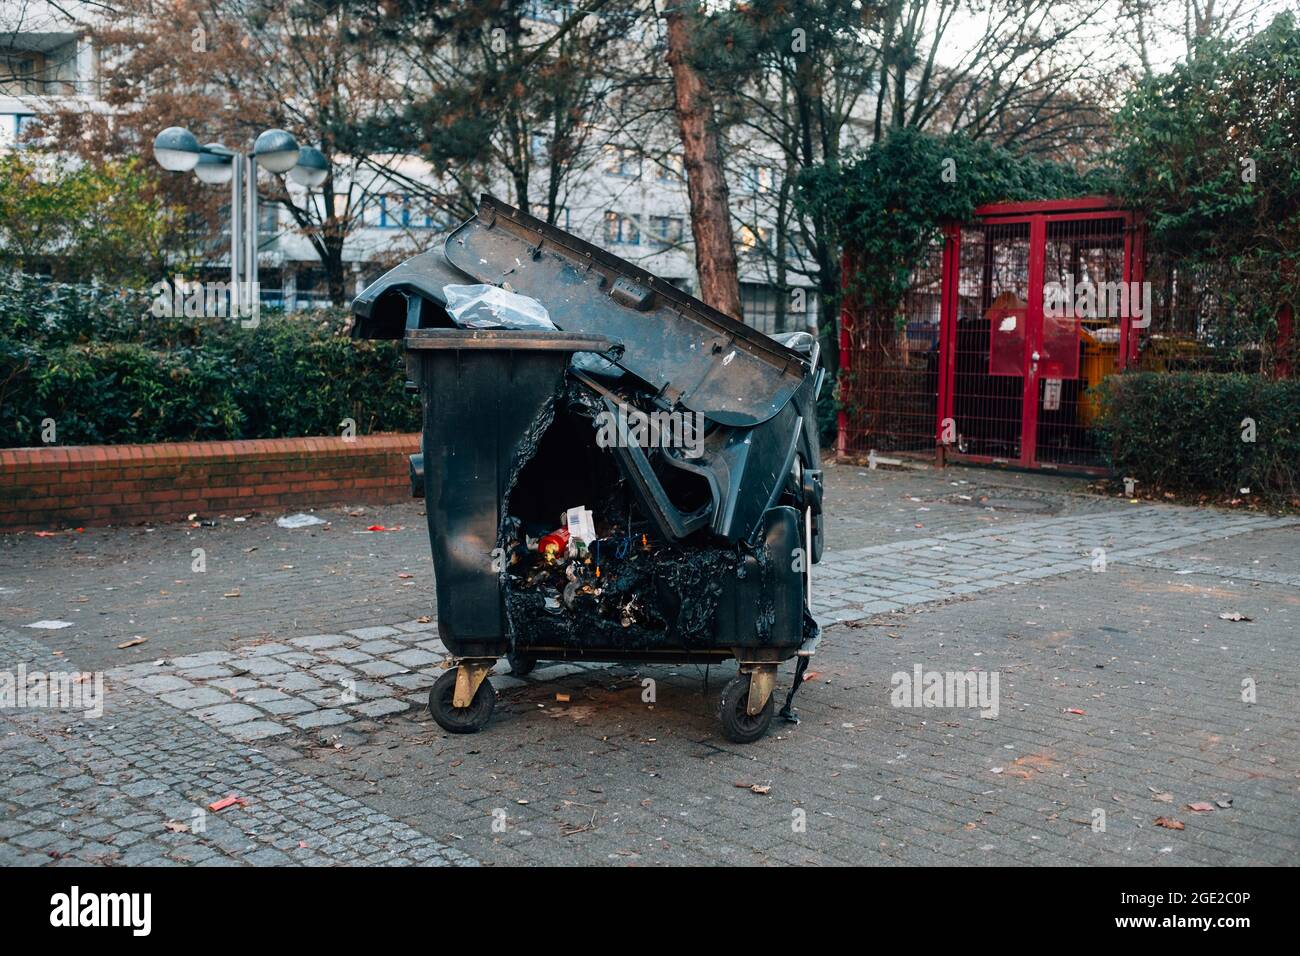 Conteneur de déchets cassé dans un parc Photo Stock - Alamy